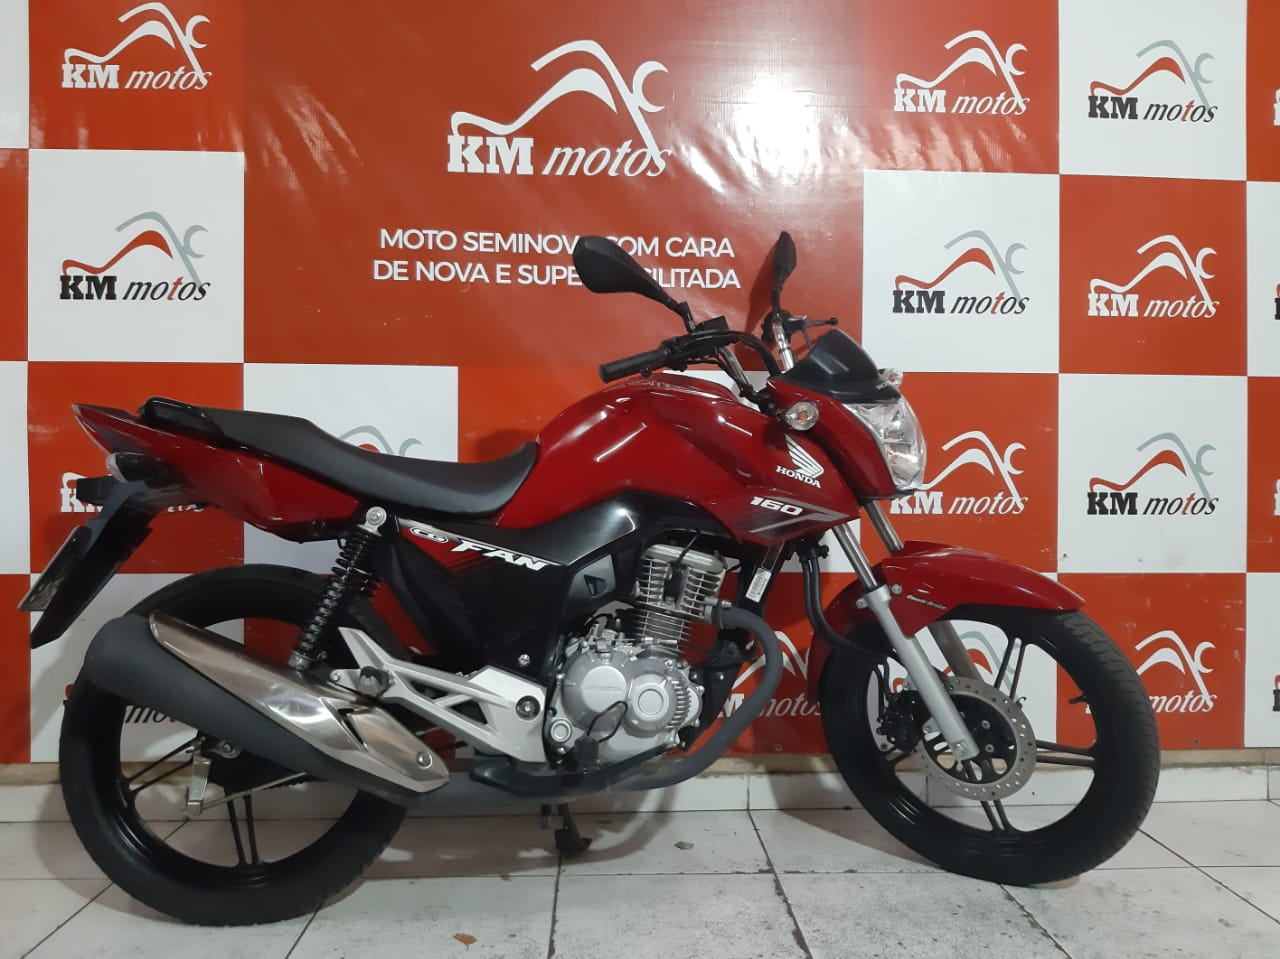 Honda Cg 160 Fan Flex 2018 Km Motos Sua Loja De Motos Semi Novas 7995